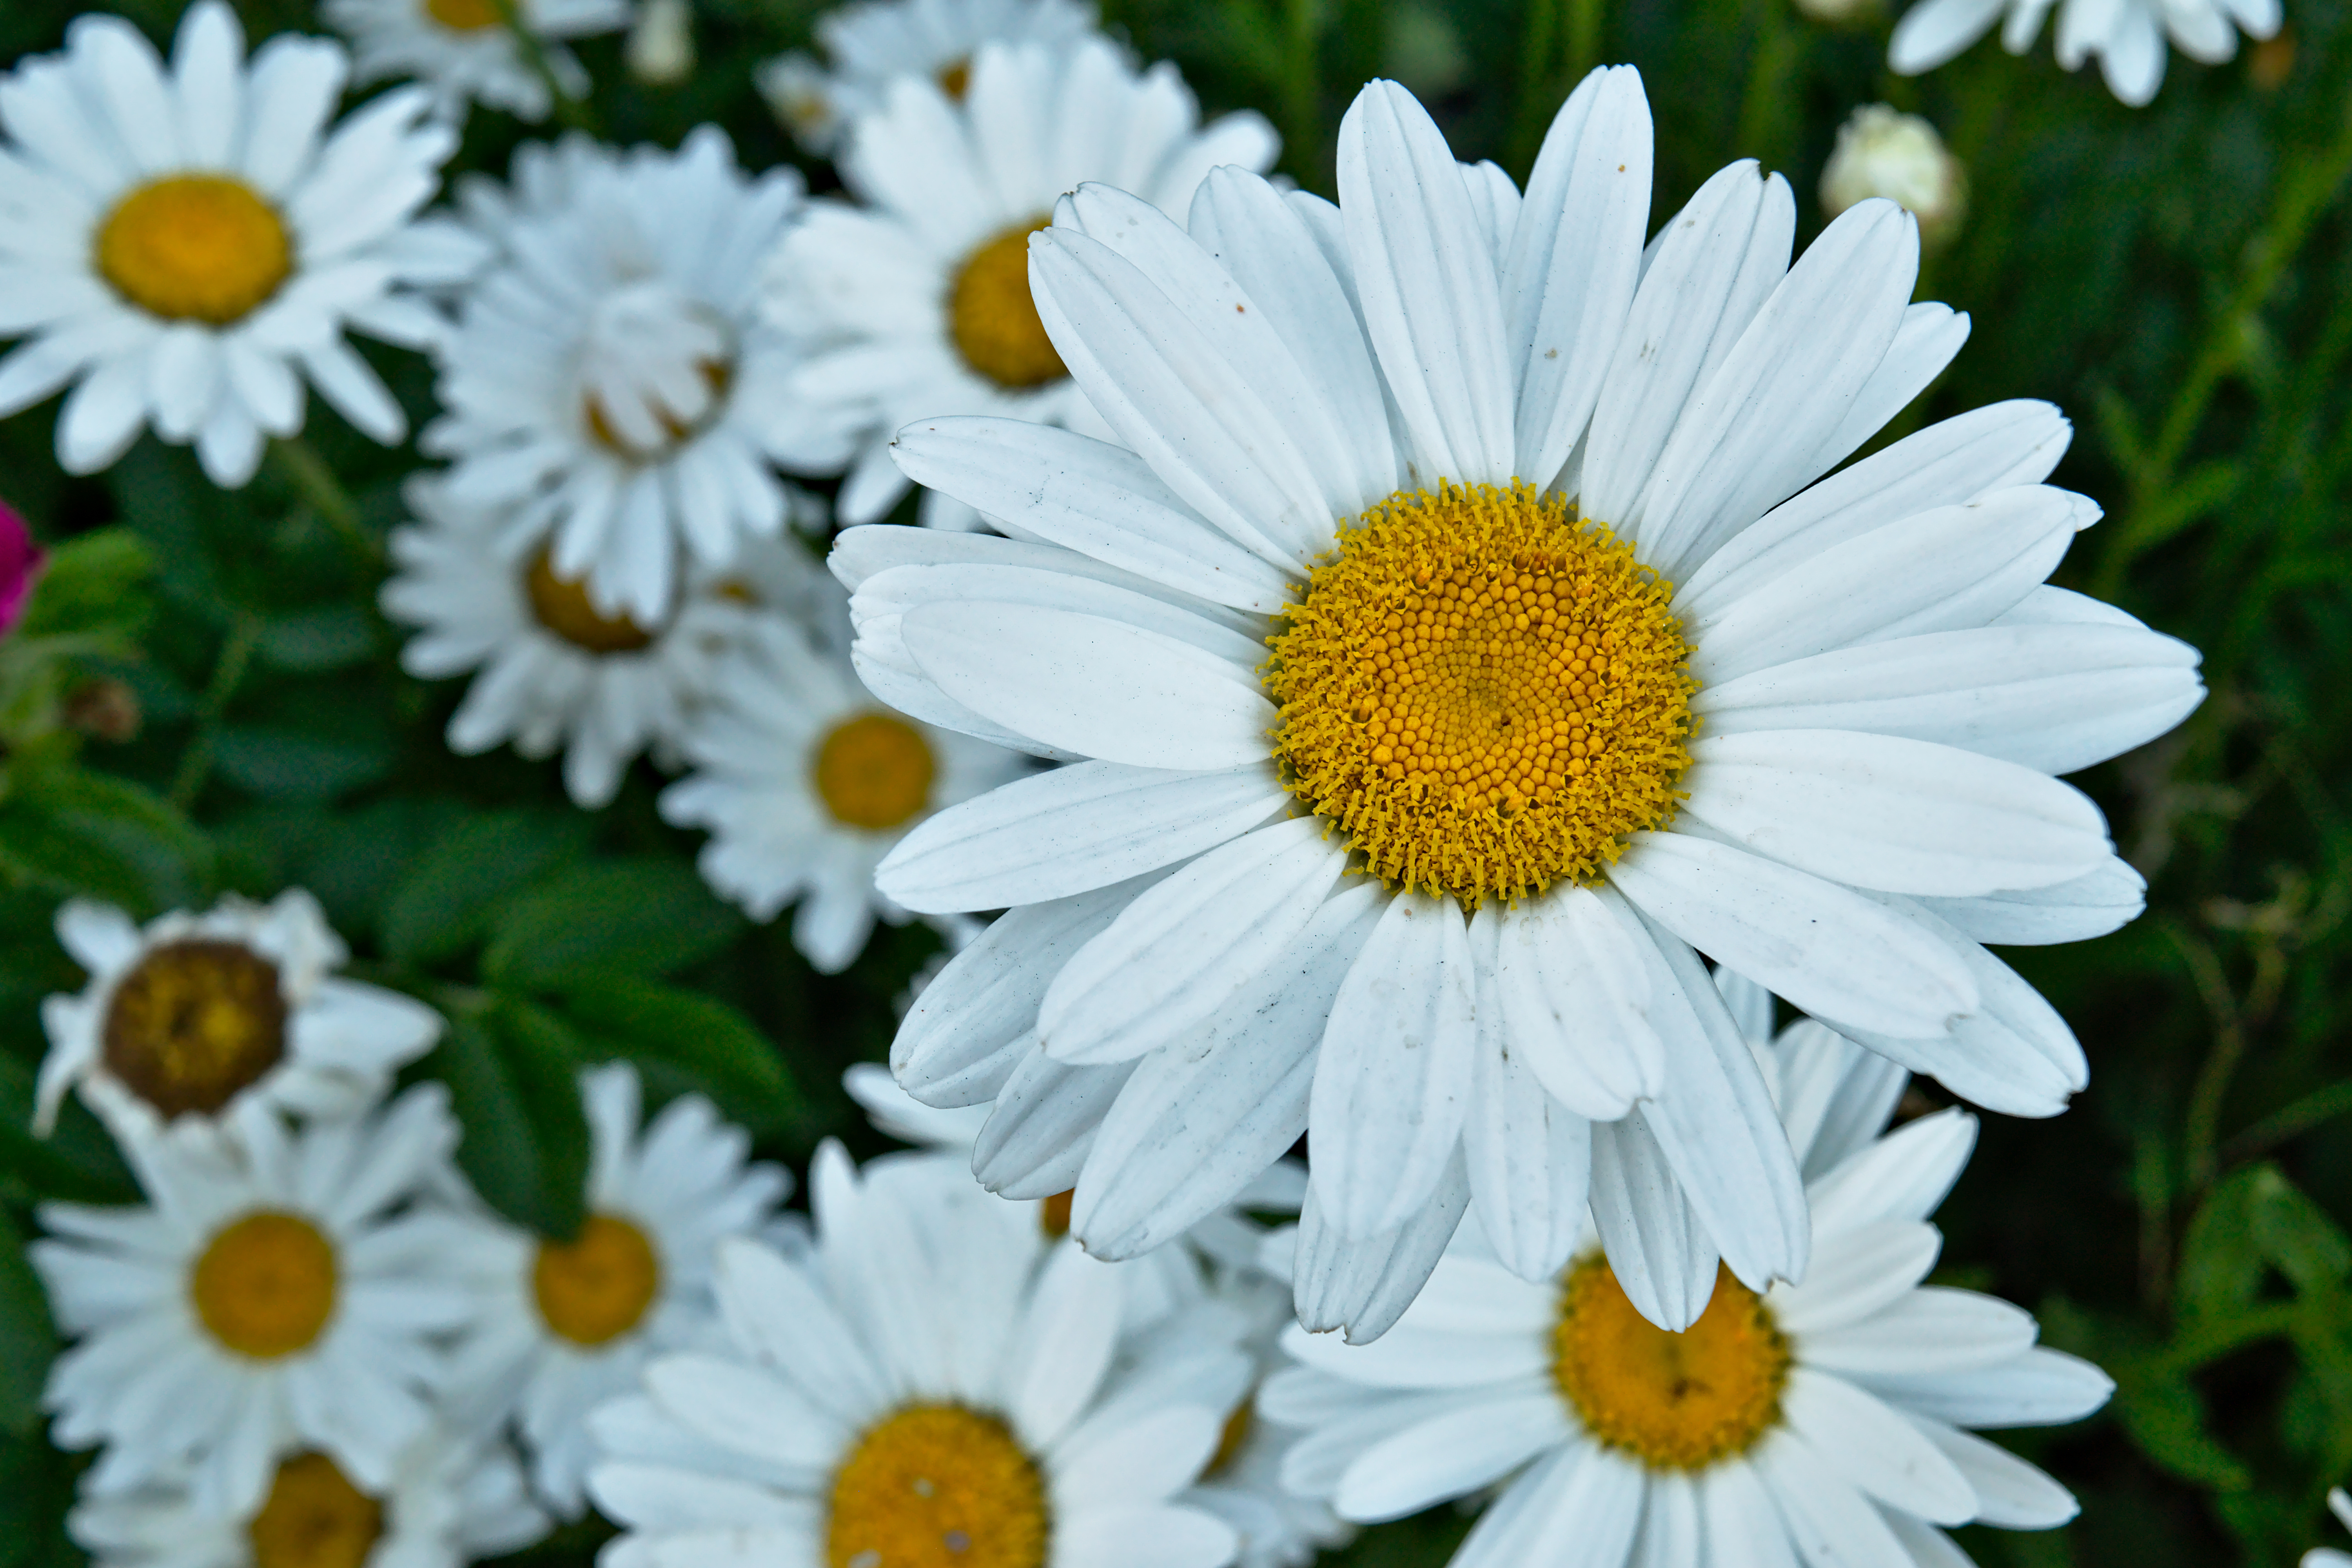 File:Daisy garden in Bend, OR.jpg - Wikimedia Commons